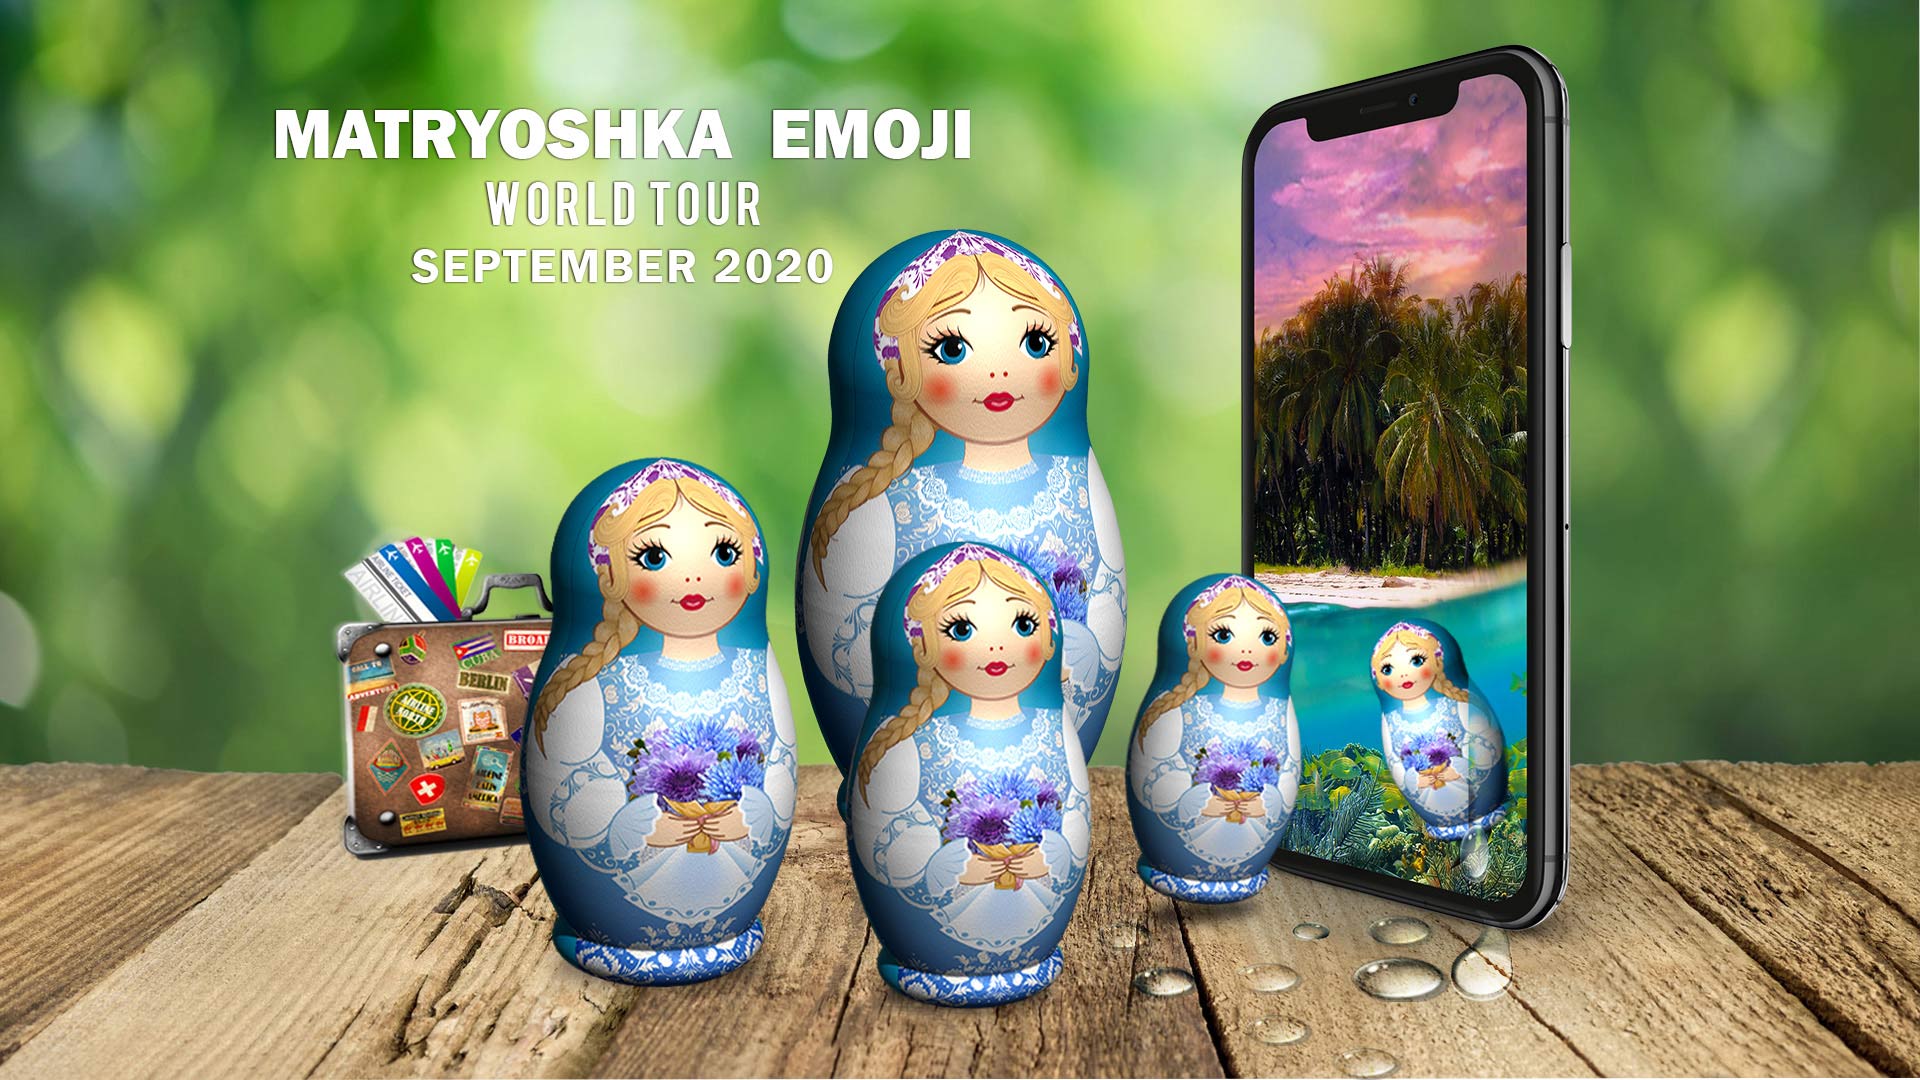 World Tour of the Matryoshka Emoji